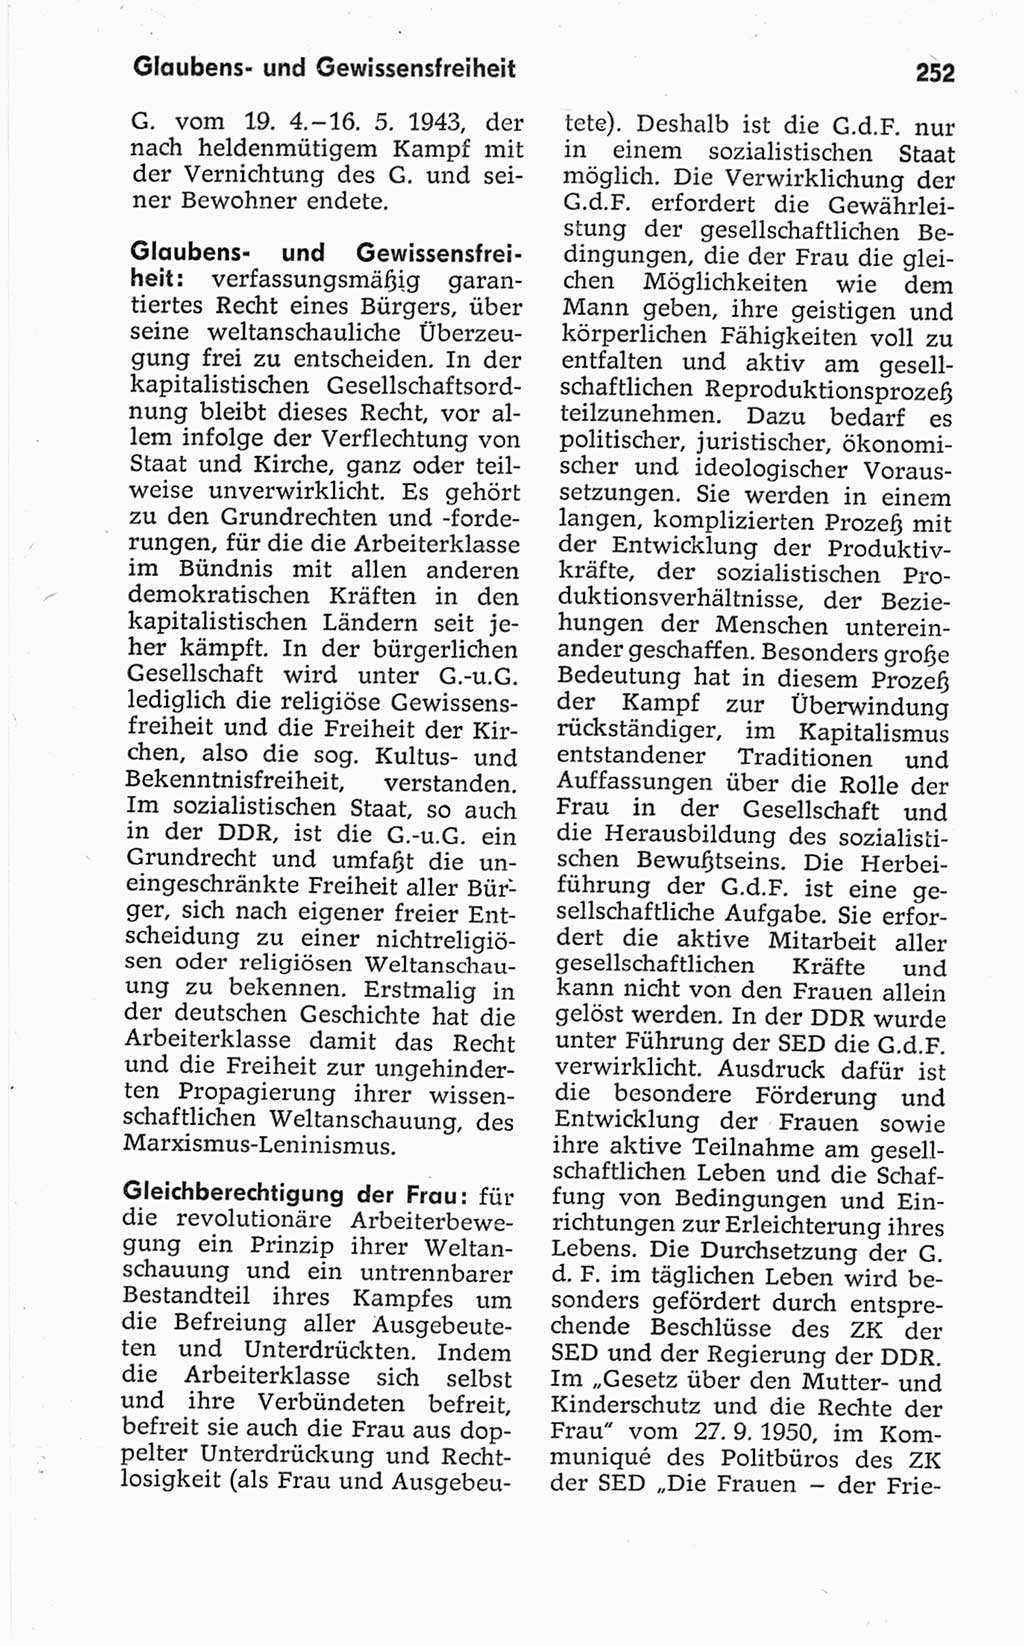 Kleines politisches Wörterbuch [Deutsche Demokratische Republik (DDR)] 1967, Seite 252 (Kl. pol. Wb. DDR 1967, S. 252)